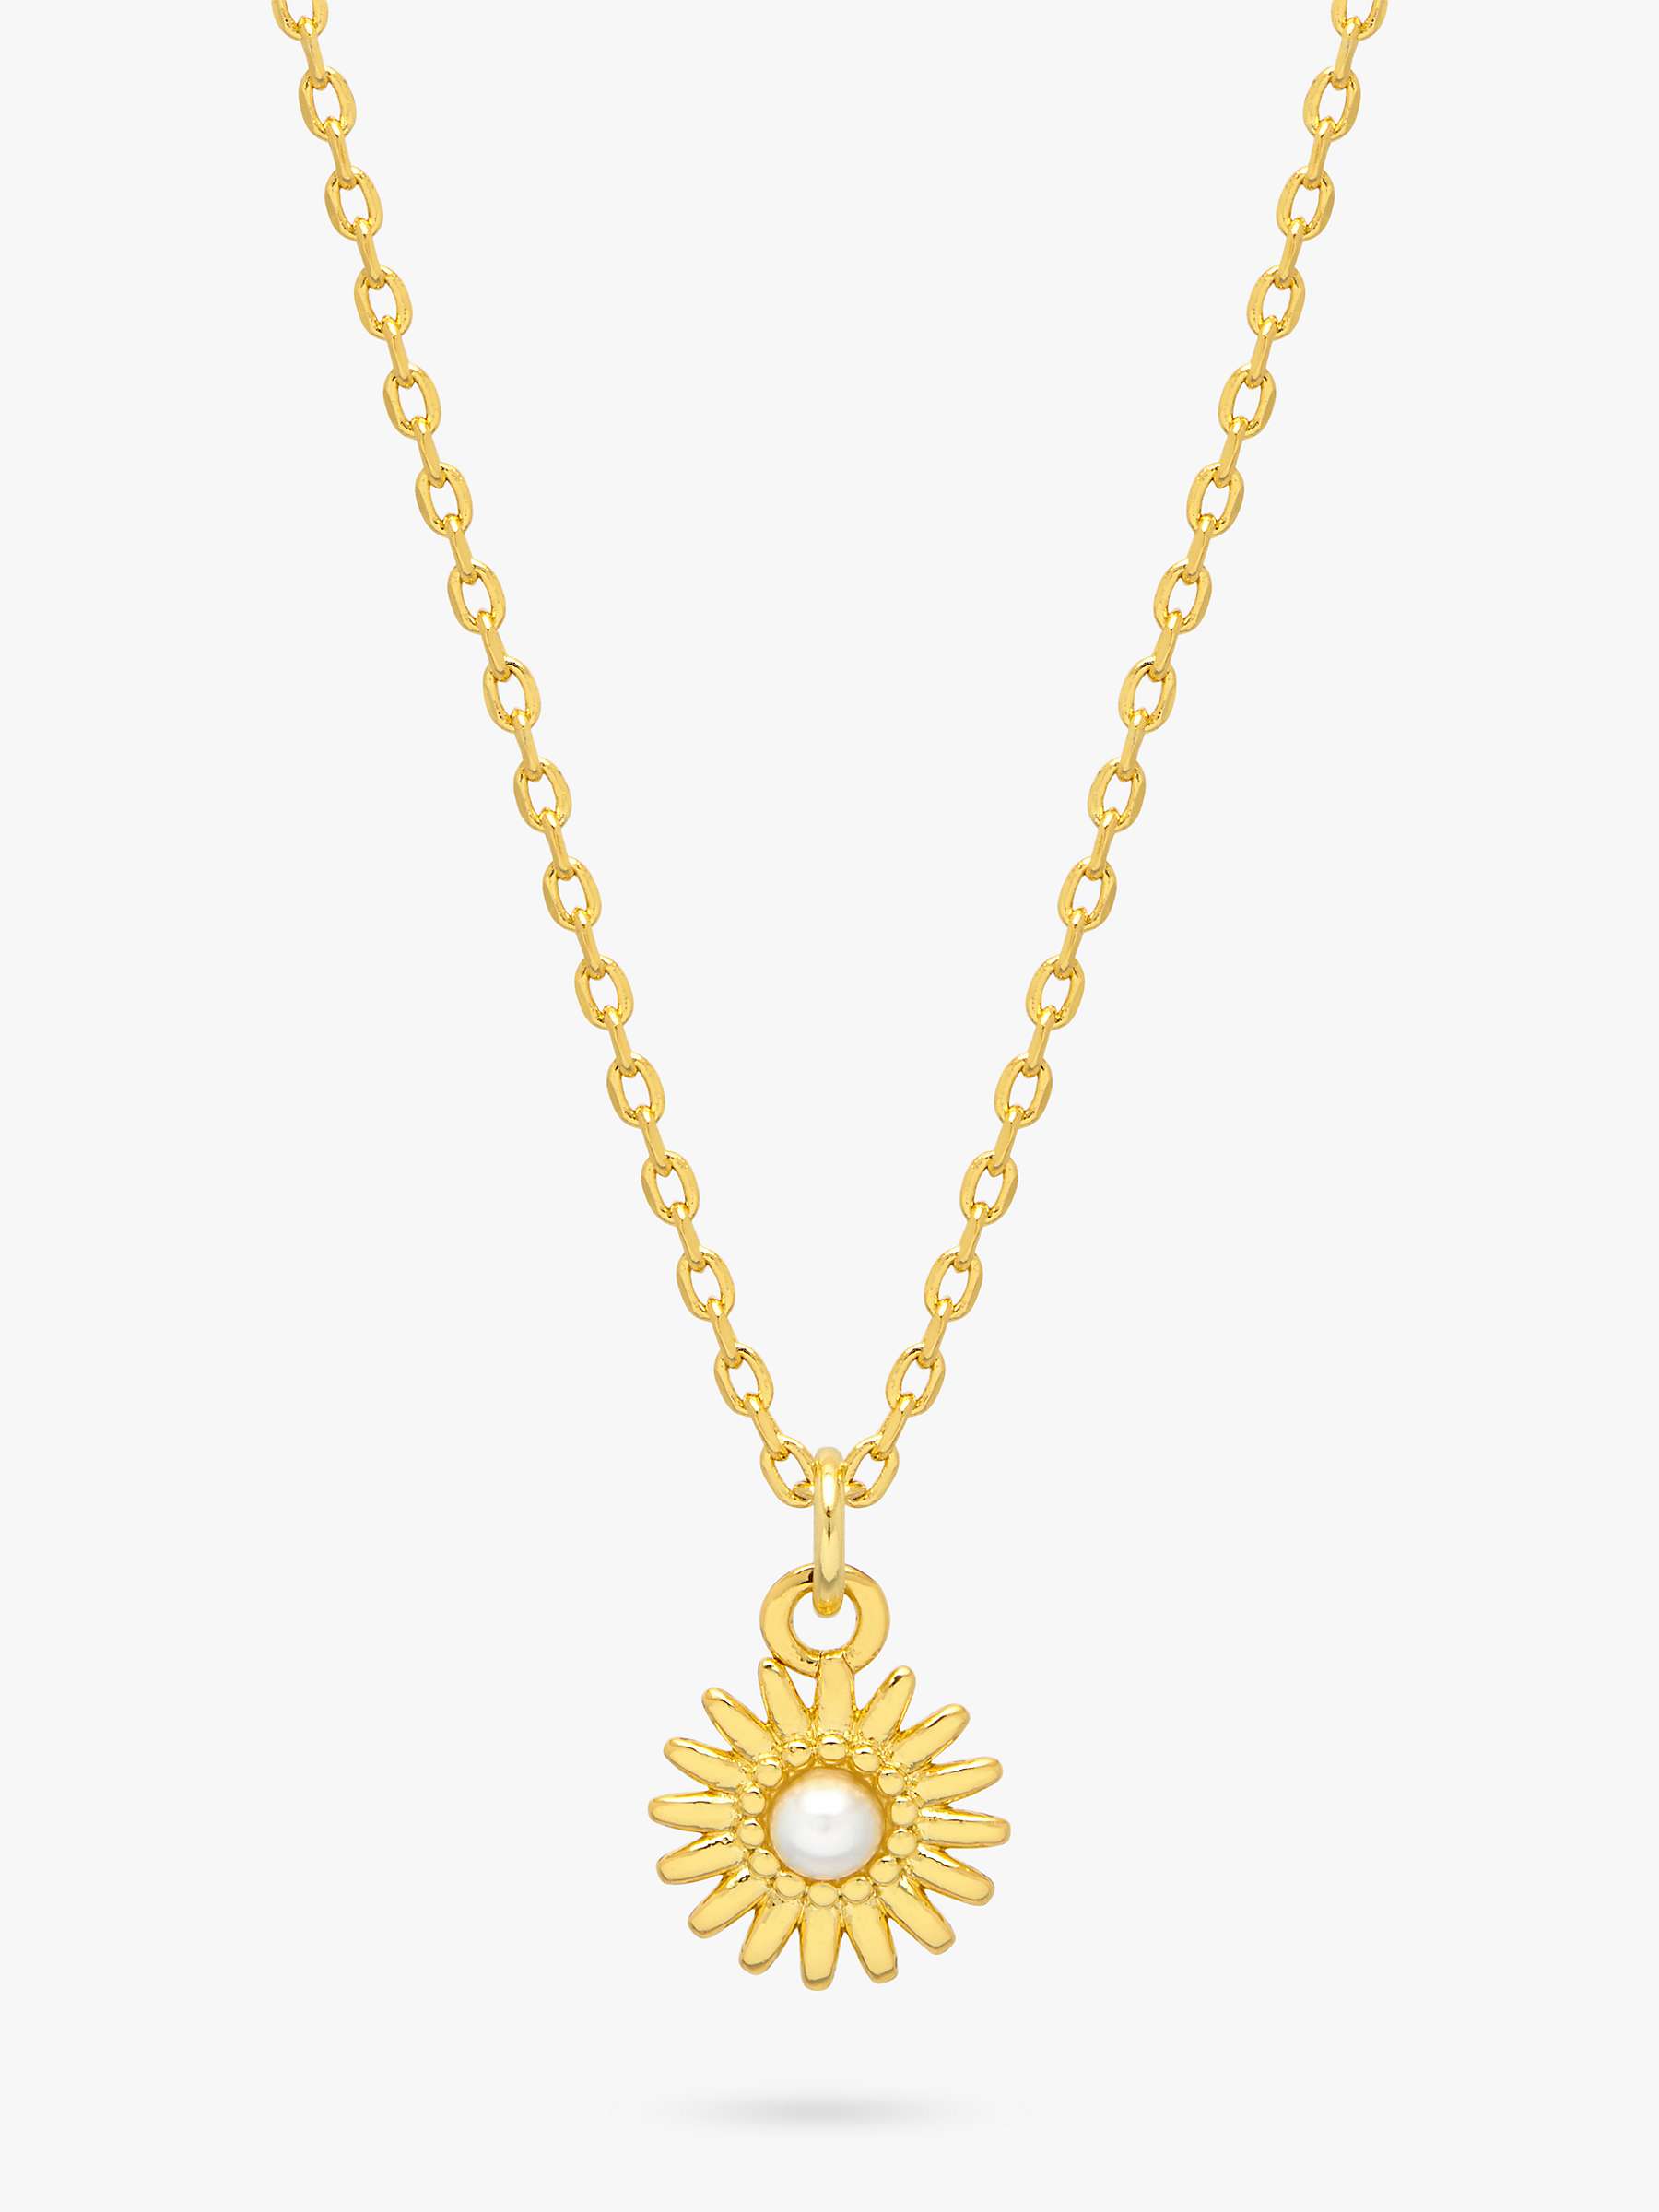 Buy Estella Bartlett Wonderful Mum Flower Necklace, Gold Online at johnlewis.com